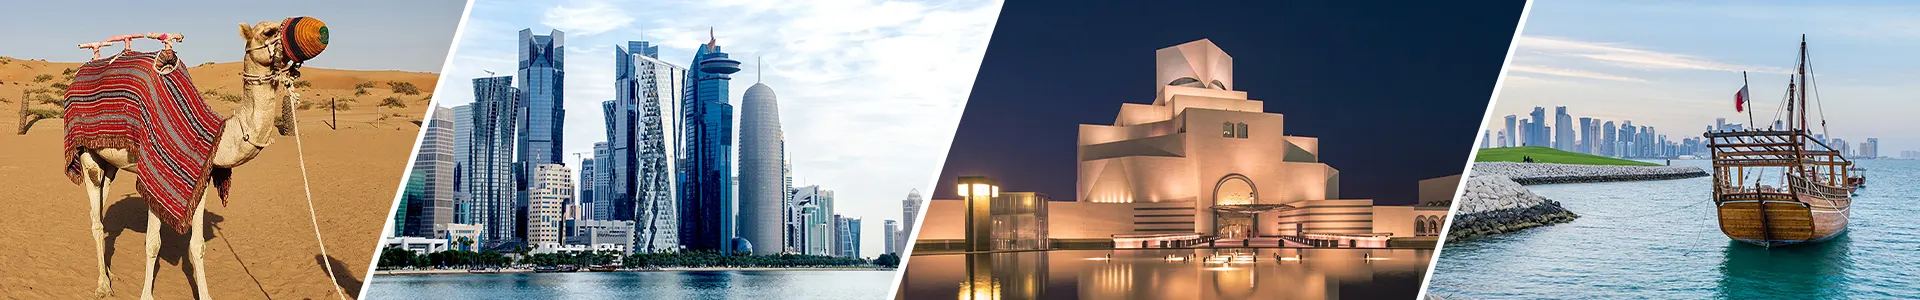 Qatar Cultural Tour Packages